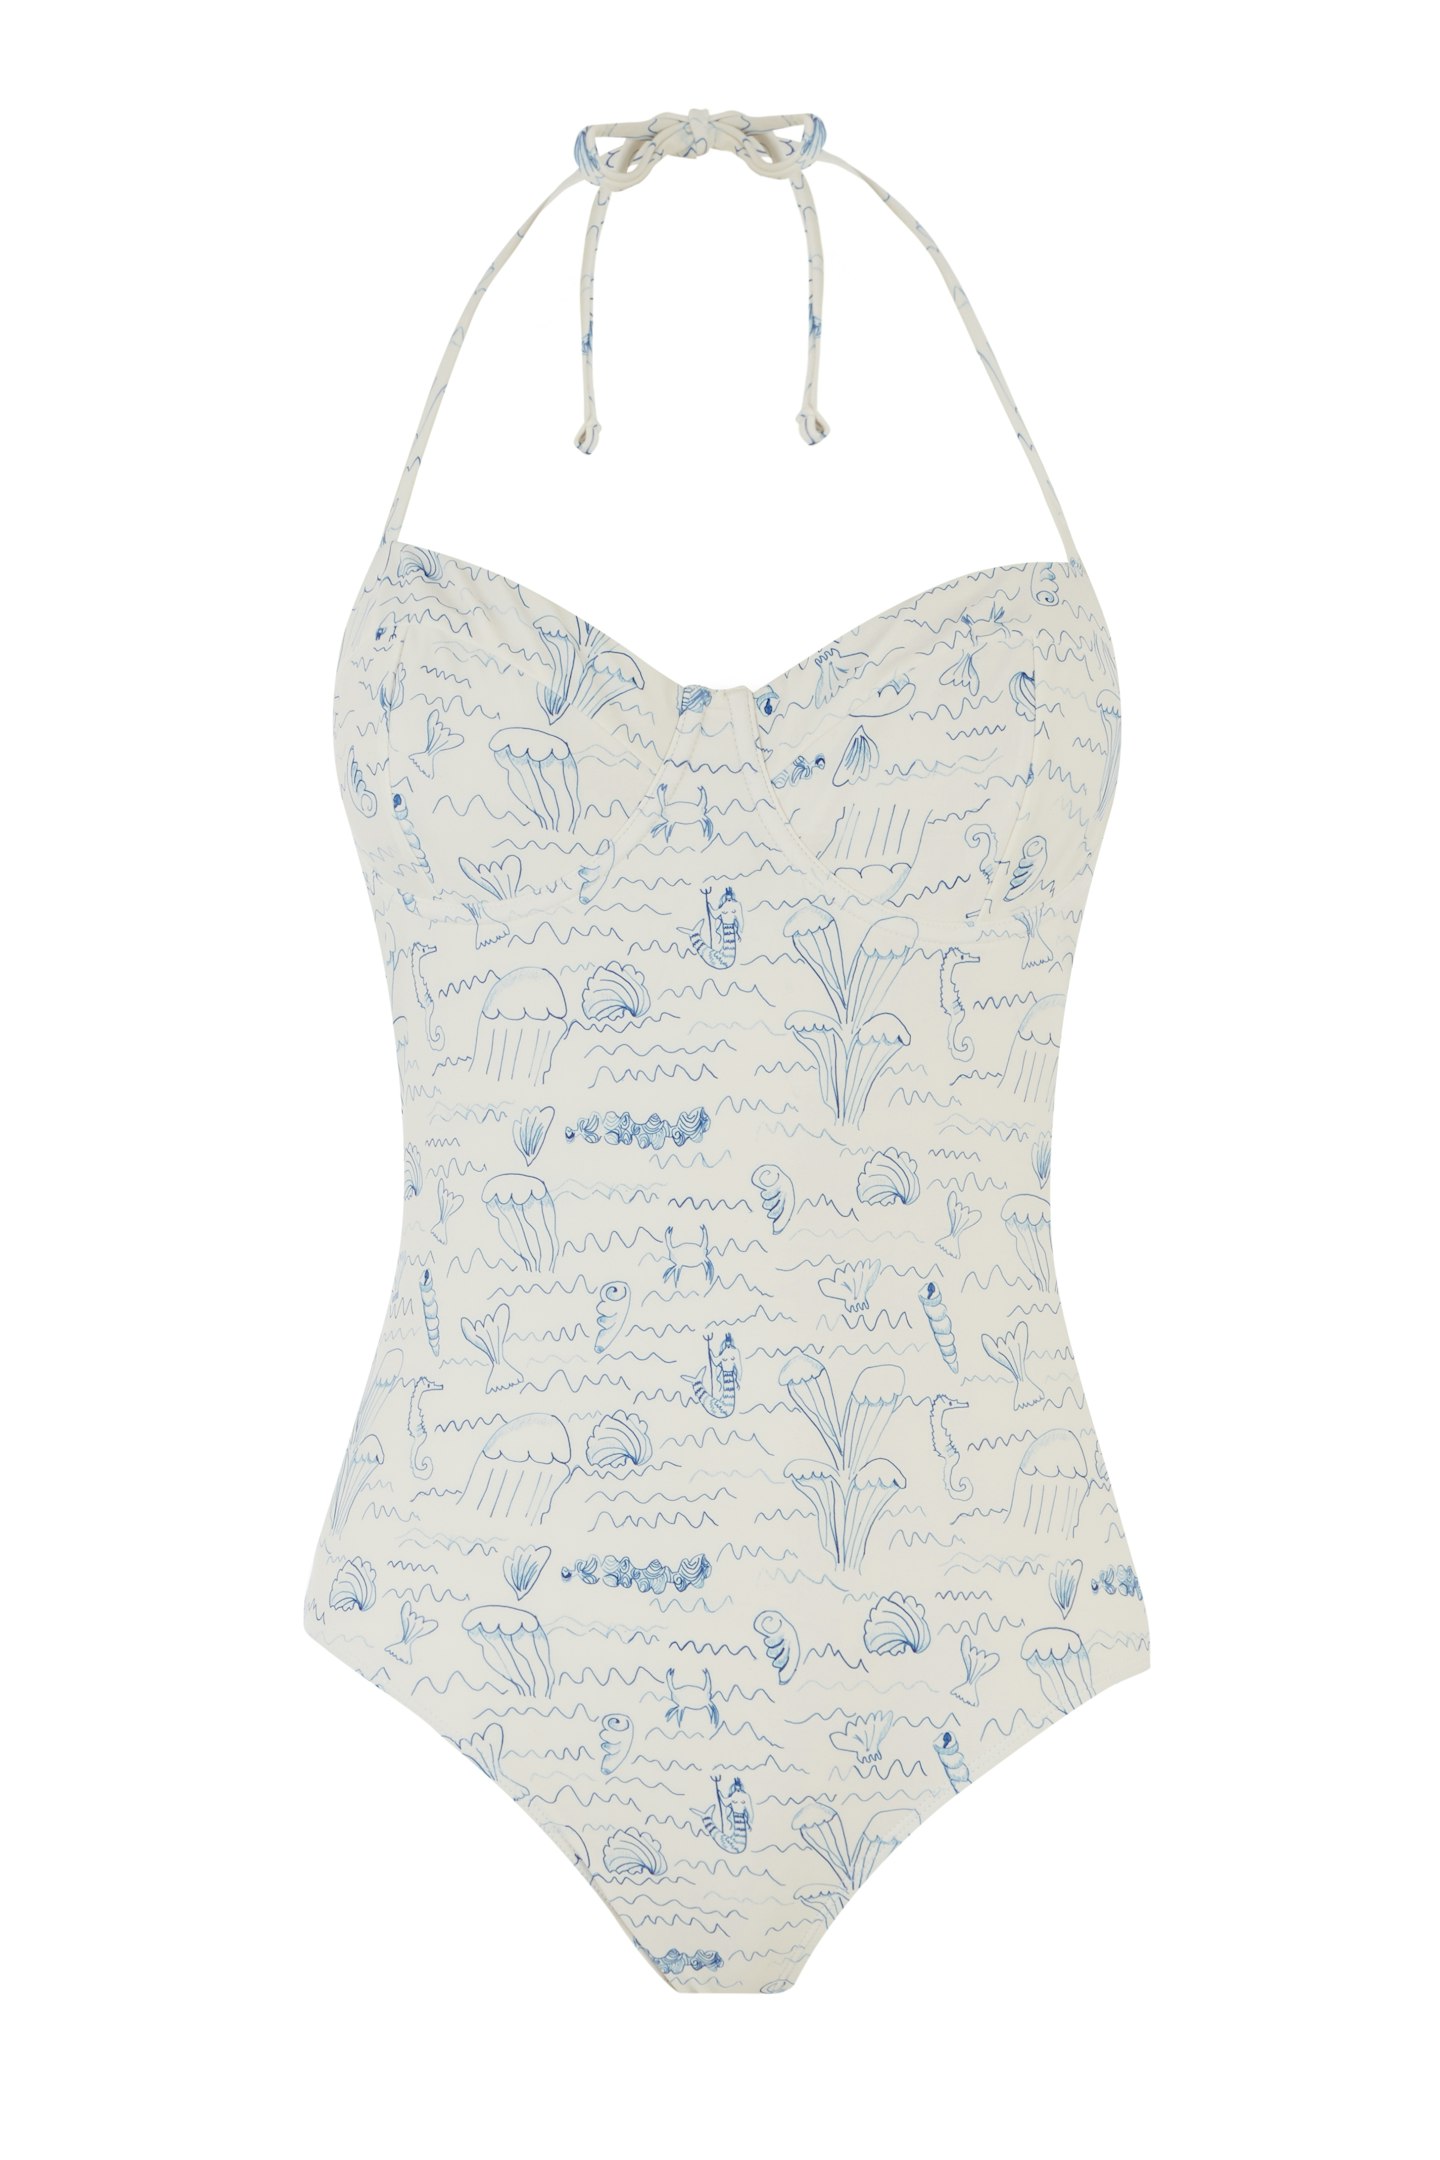 Merman Printed Swimsuit, £40